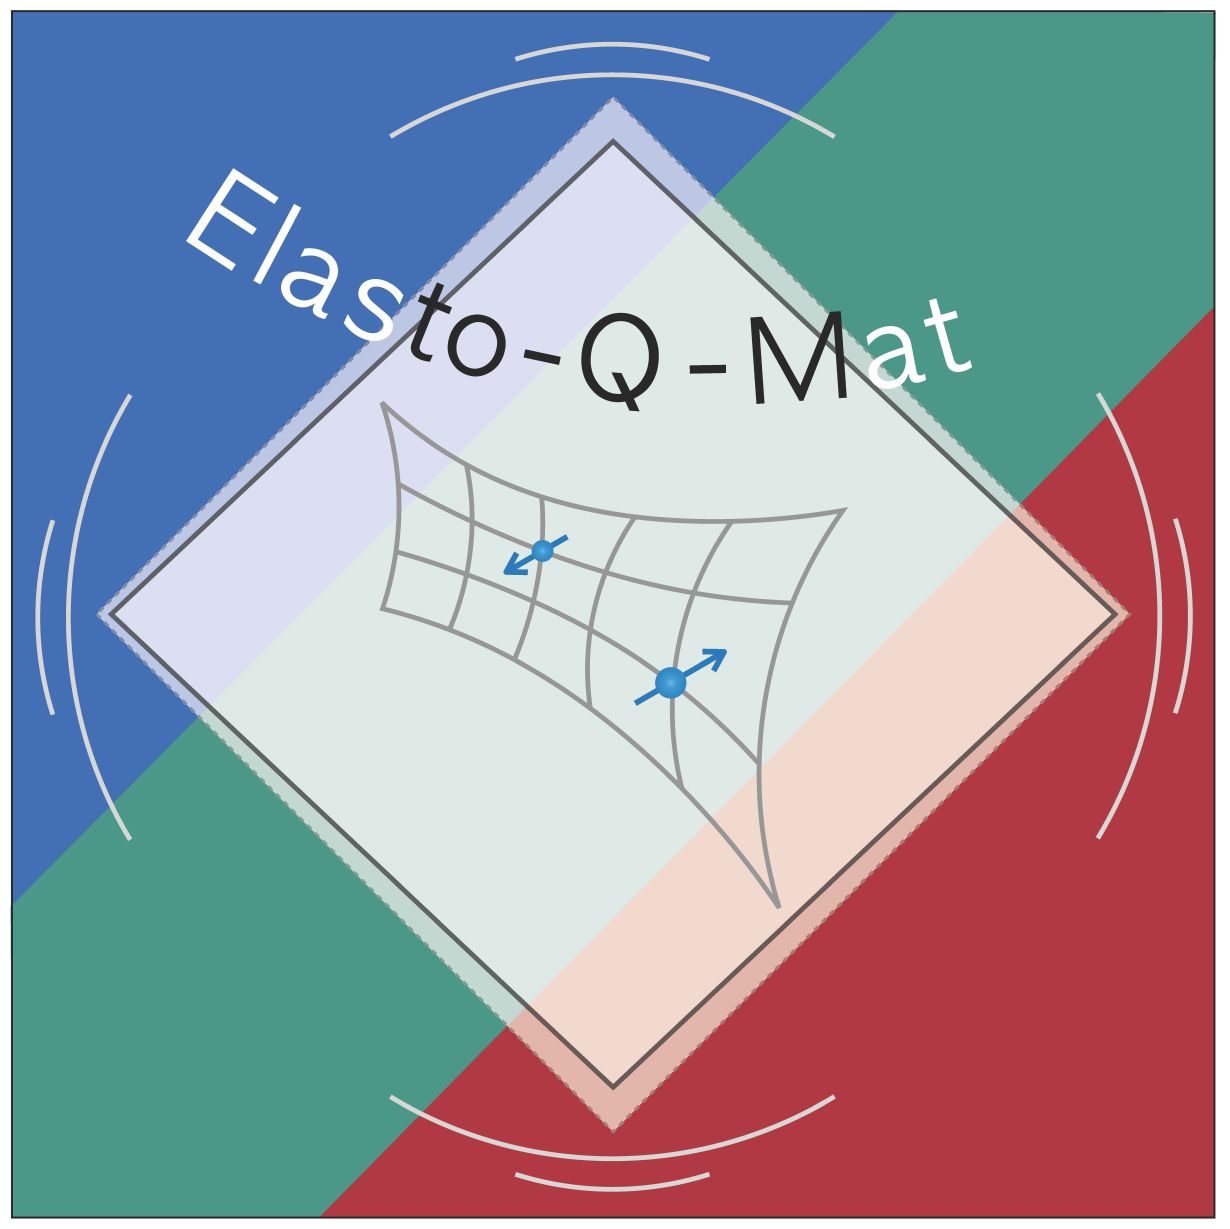 ELASTO-Q-MAT befasst sich mit Quantenmaterialien, deren Eigenschaften sich durch elastische Verformung entscheidend verändern lassen. (Abbildung: SFB/TRR 288)